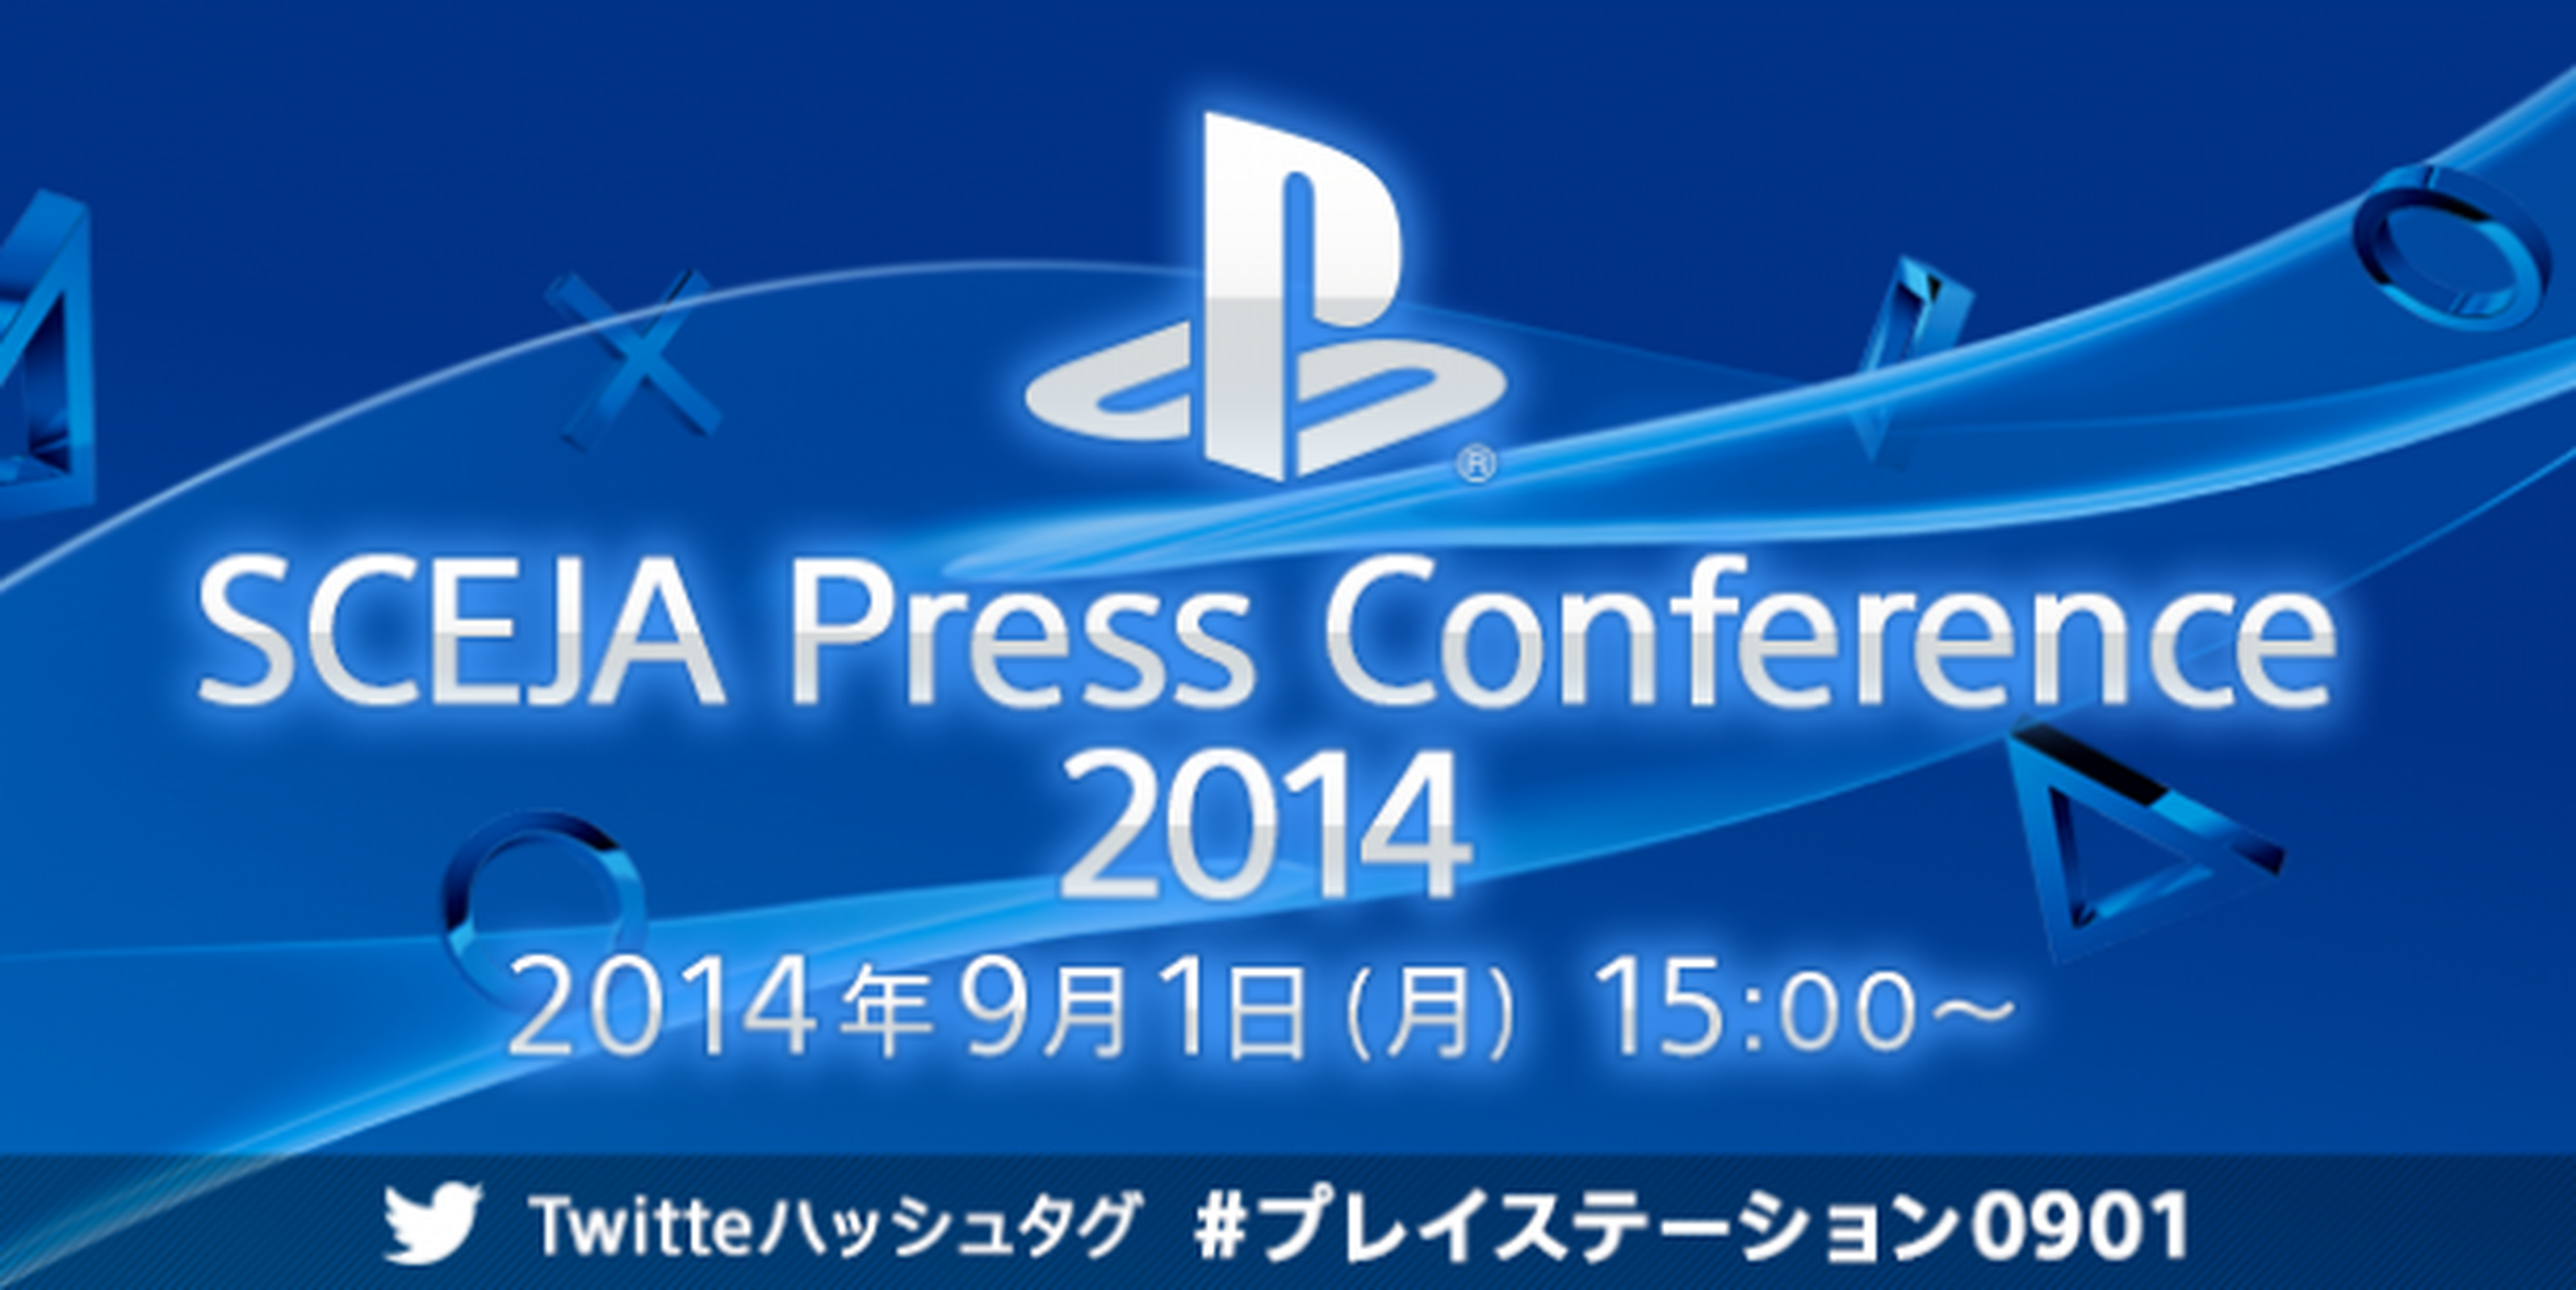 La conferencia de Sony previa al Tokyo Game Show 2014 ya tiene fecha